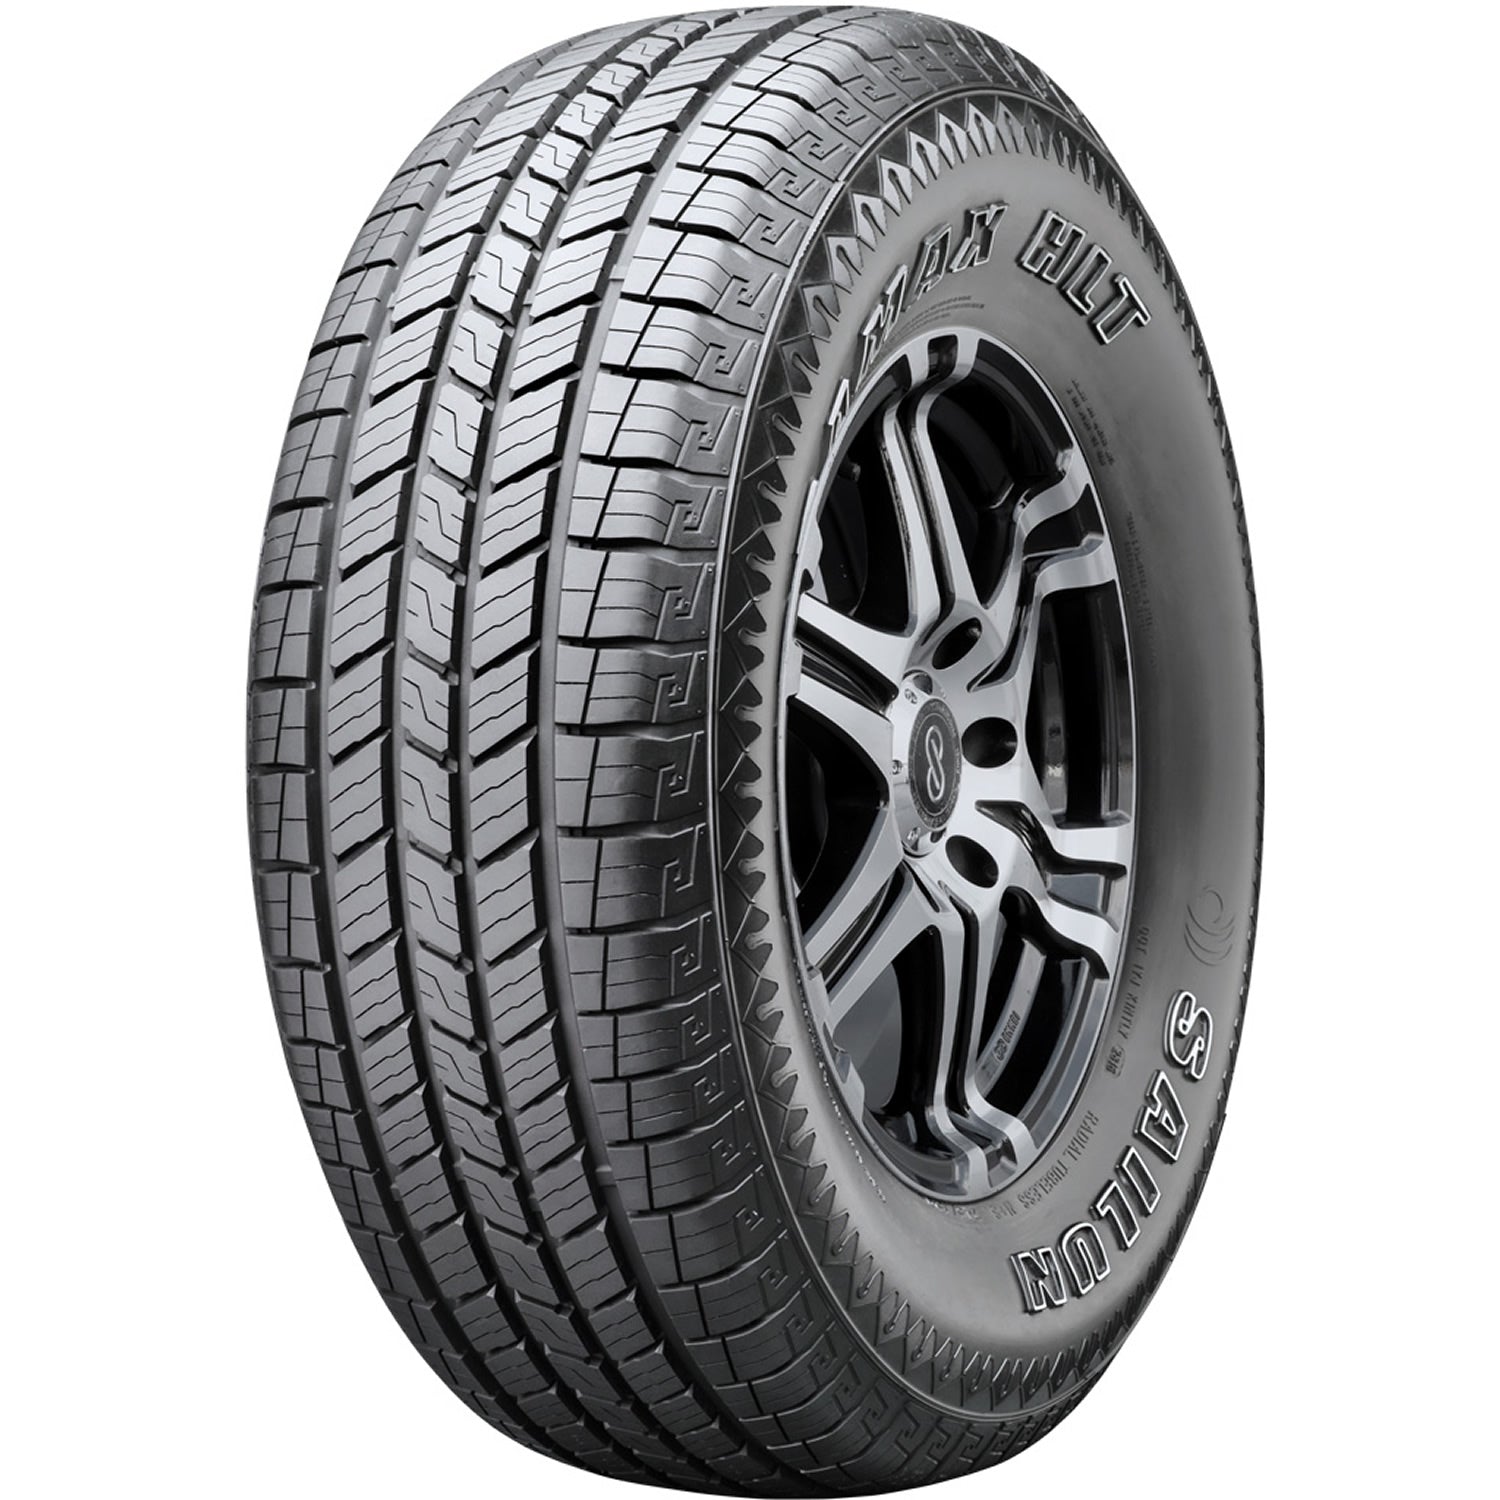 SAILUN TERRAMAX HLT 265/65R17 (30.6X10.7R 17) Tires